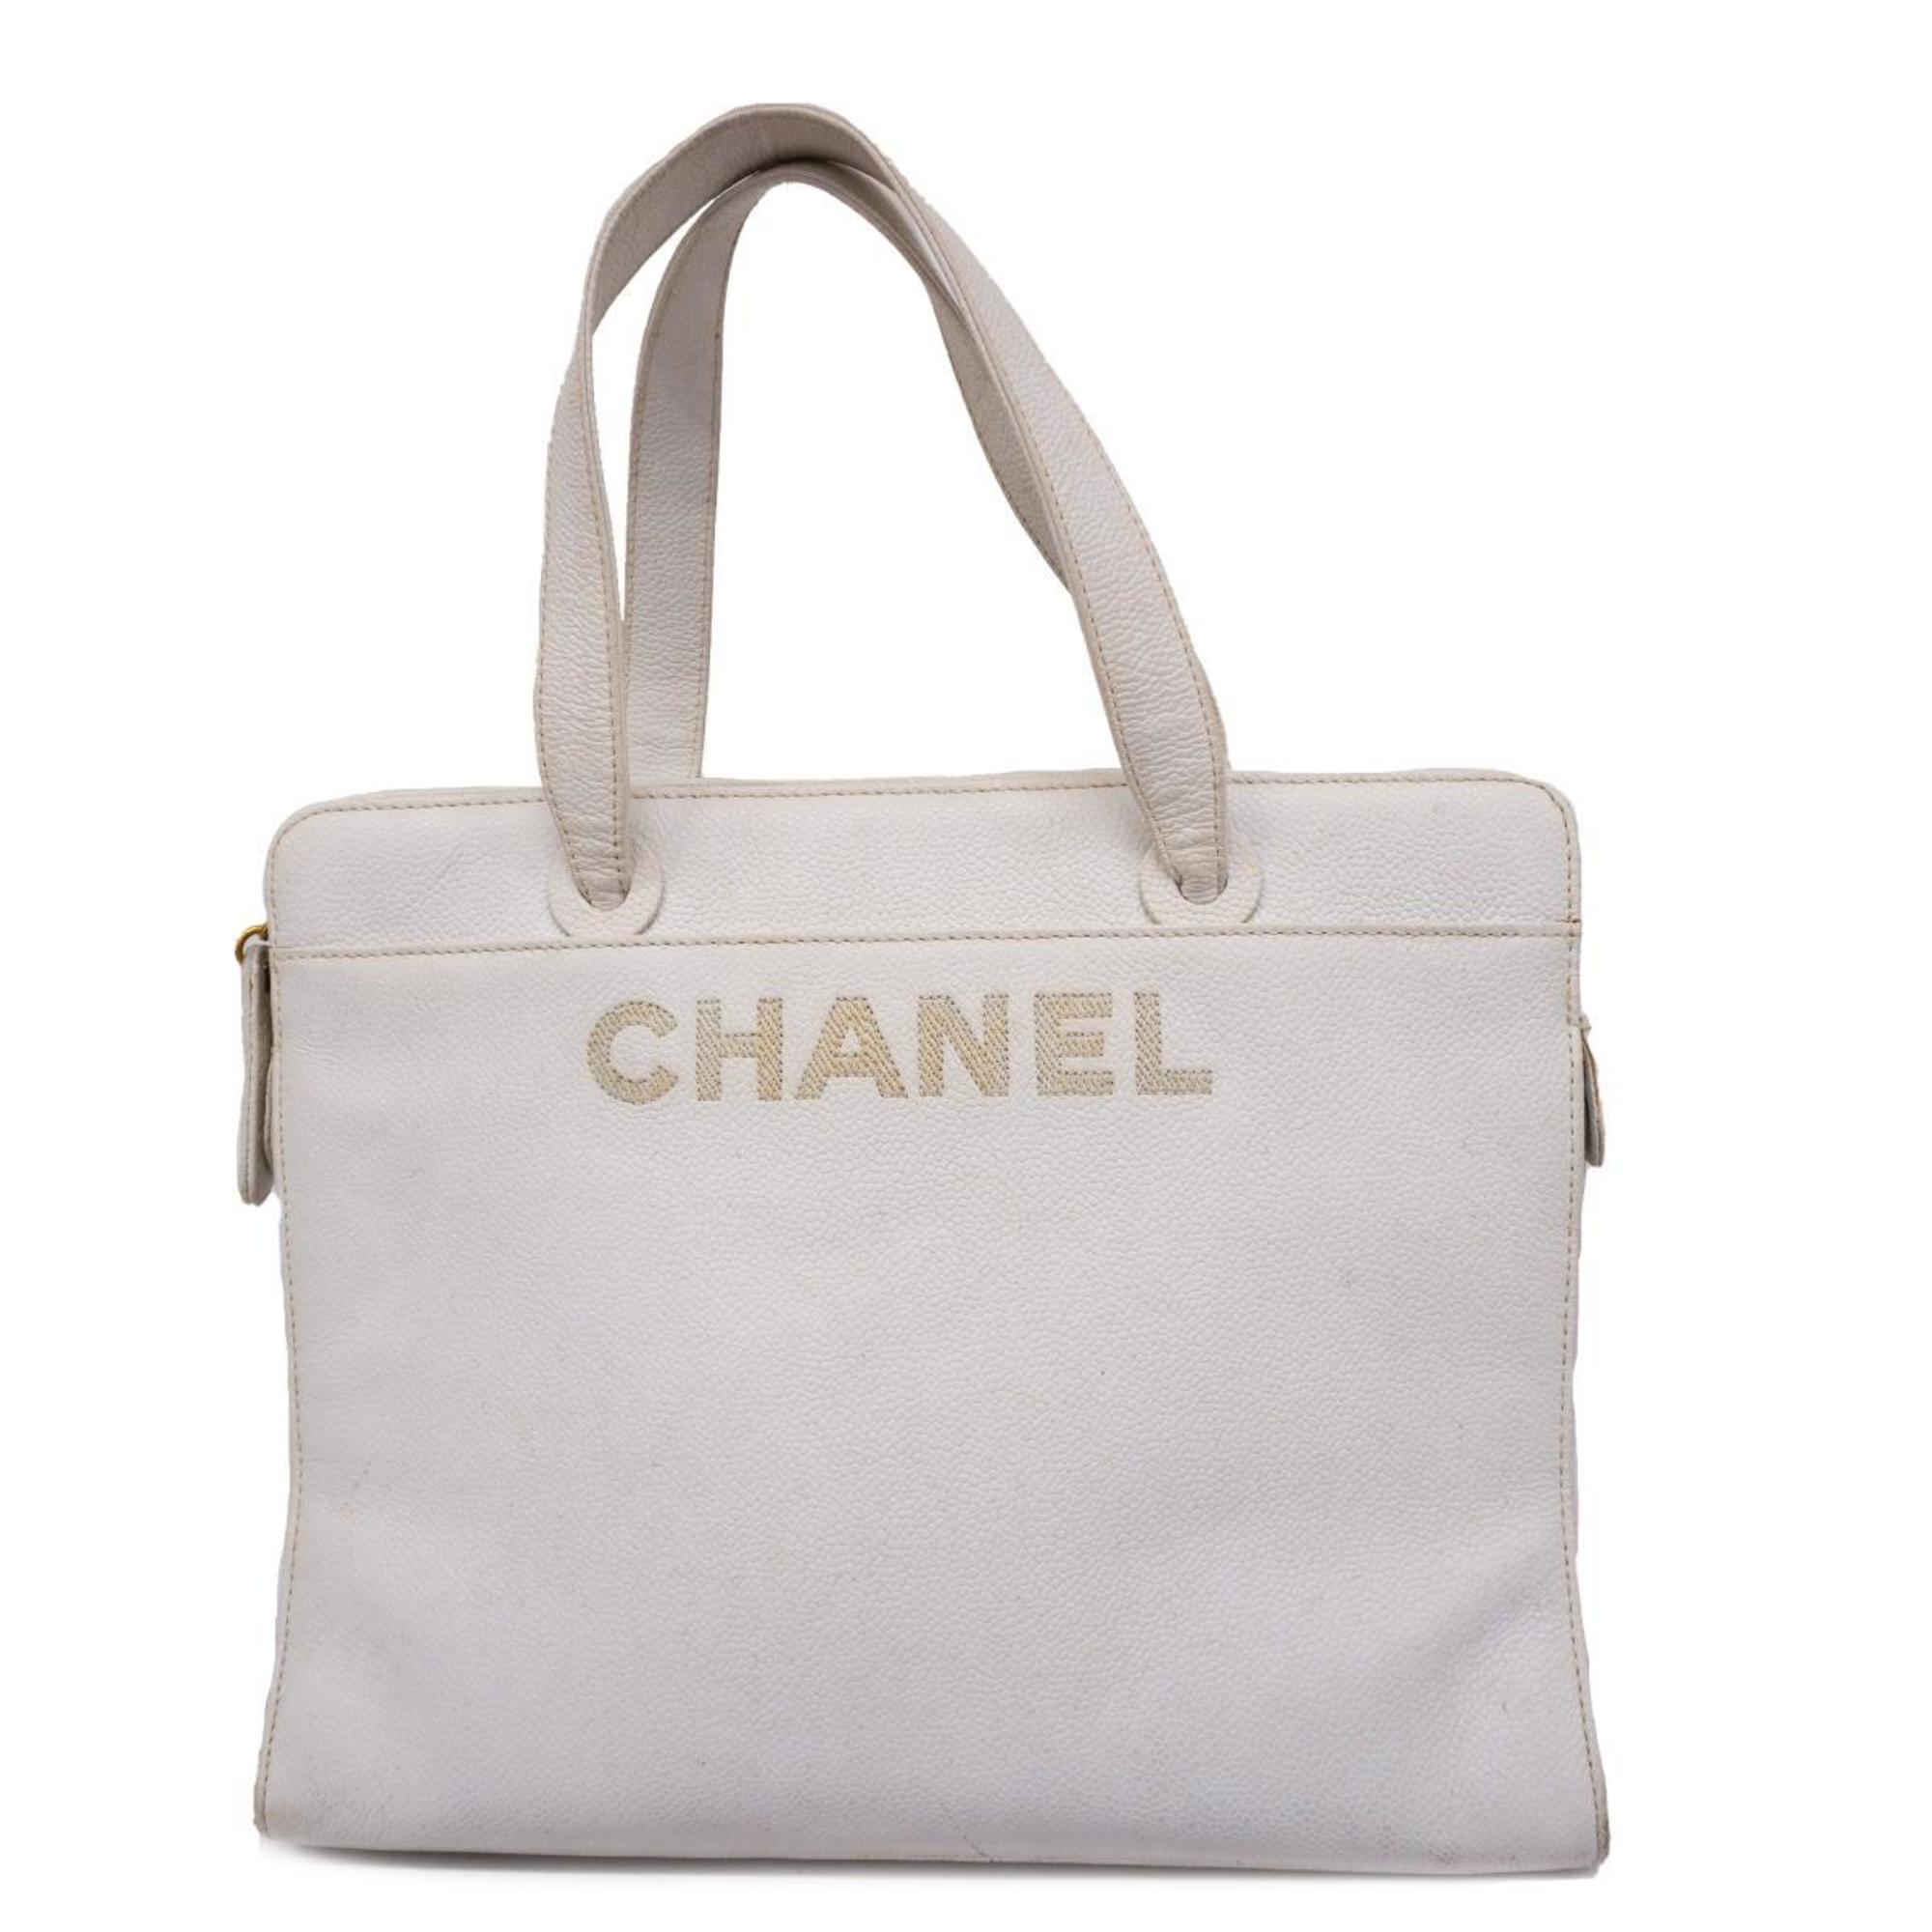 シャネル(Chanel) シャネル トートバッグ キャビアスキン ホワイト 